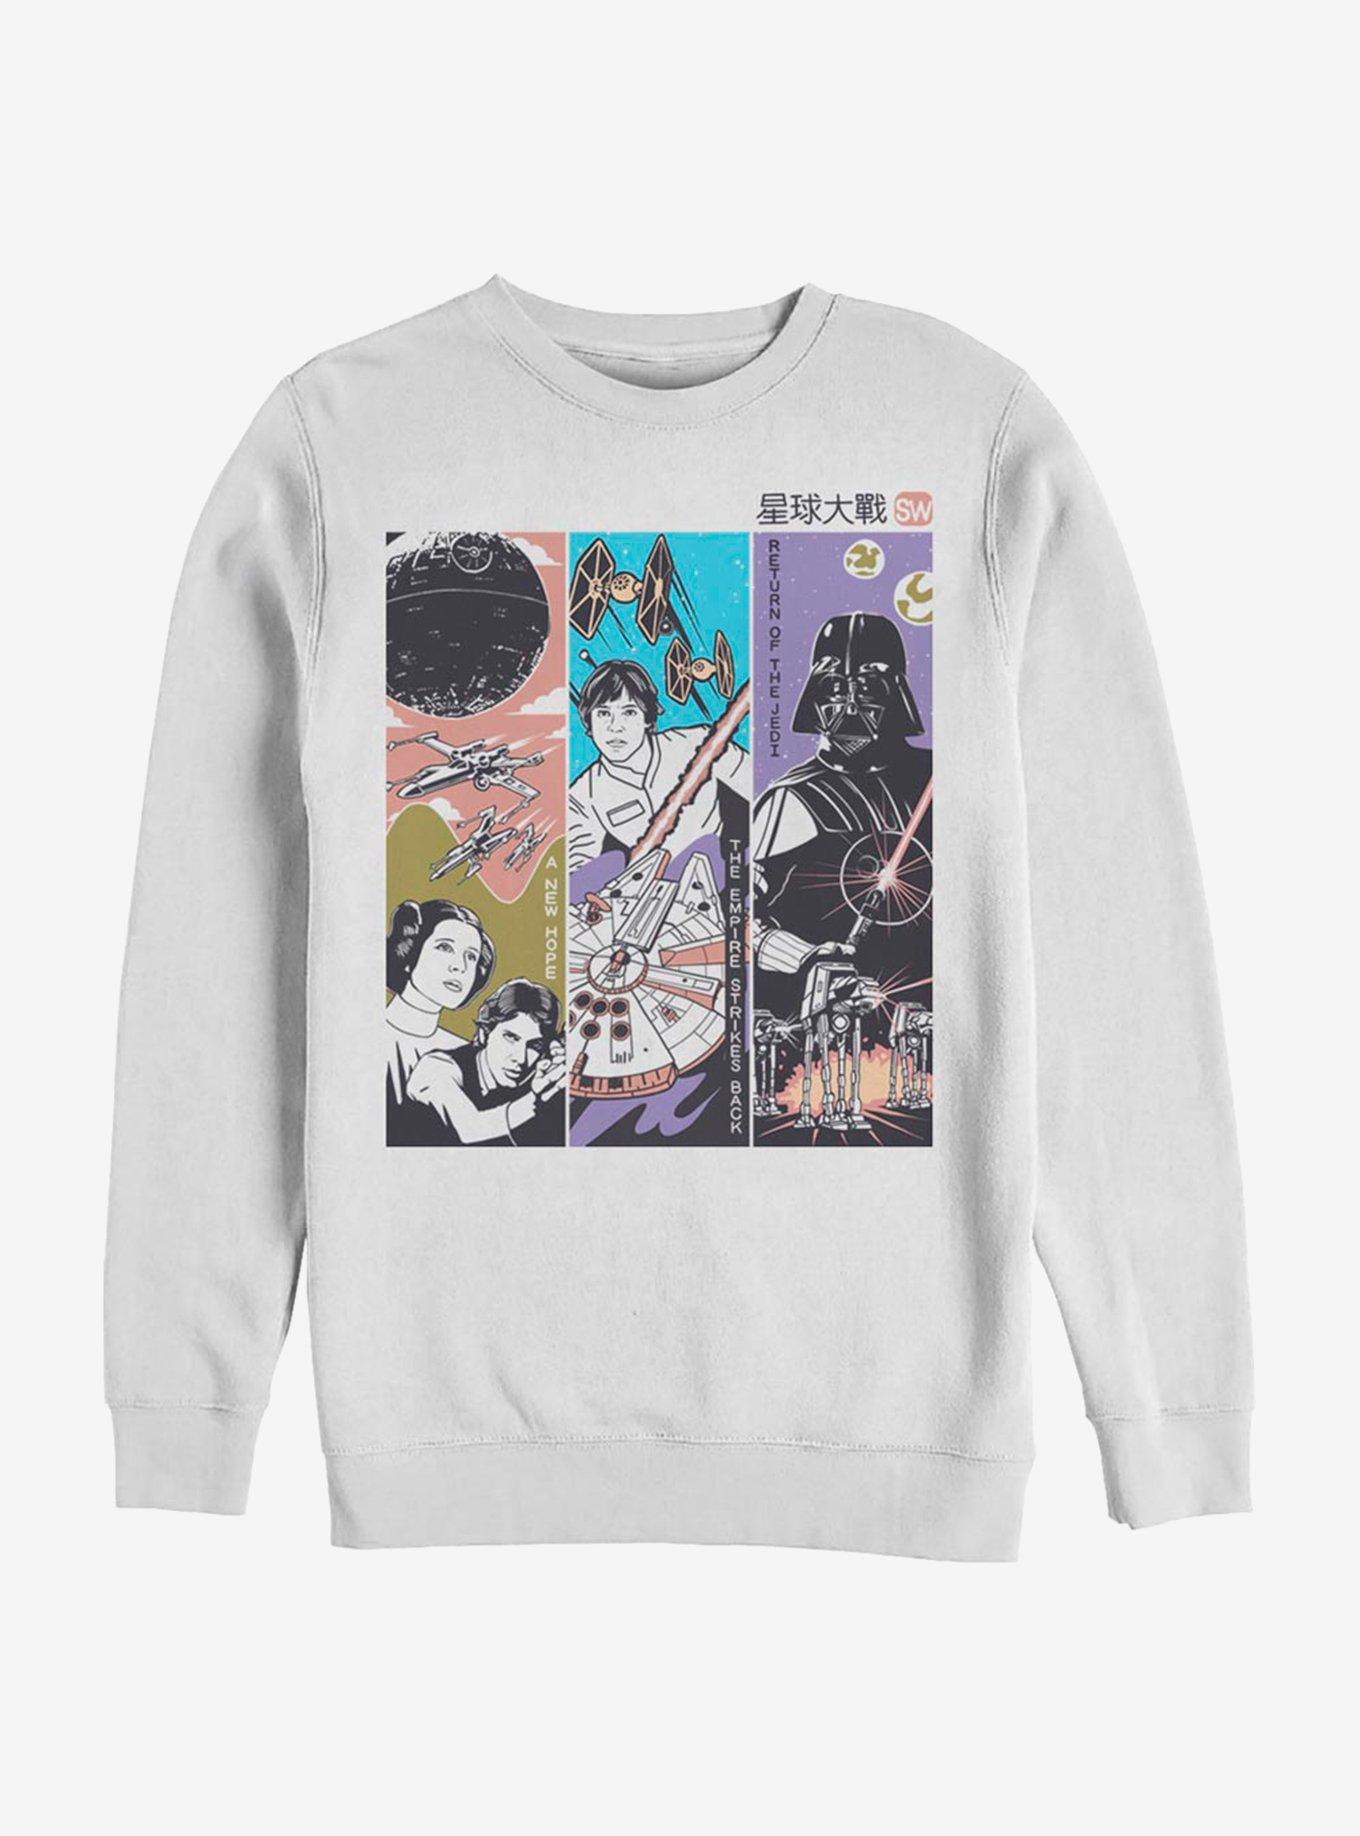 Star Wars Manga Crew Sweatshirt